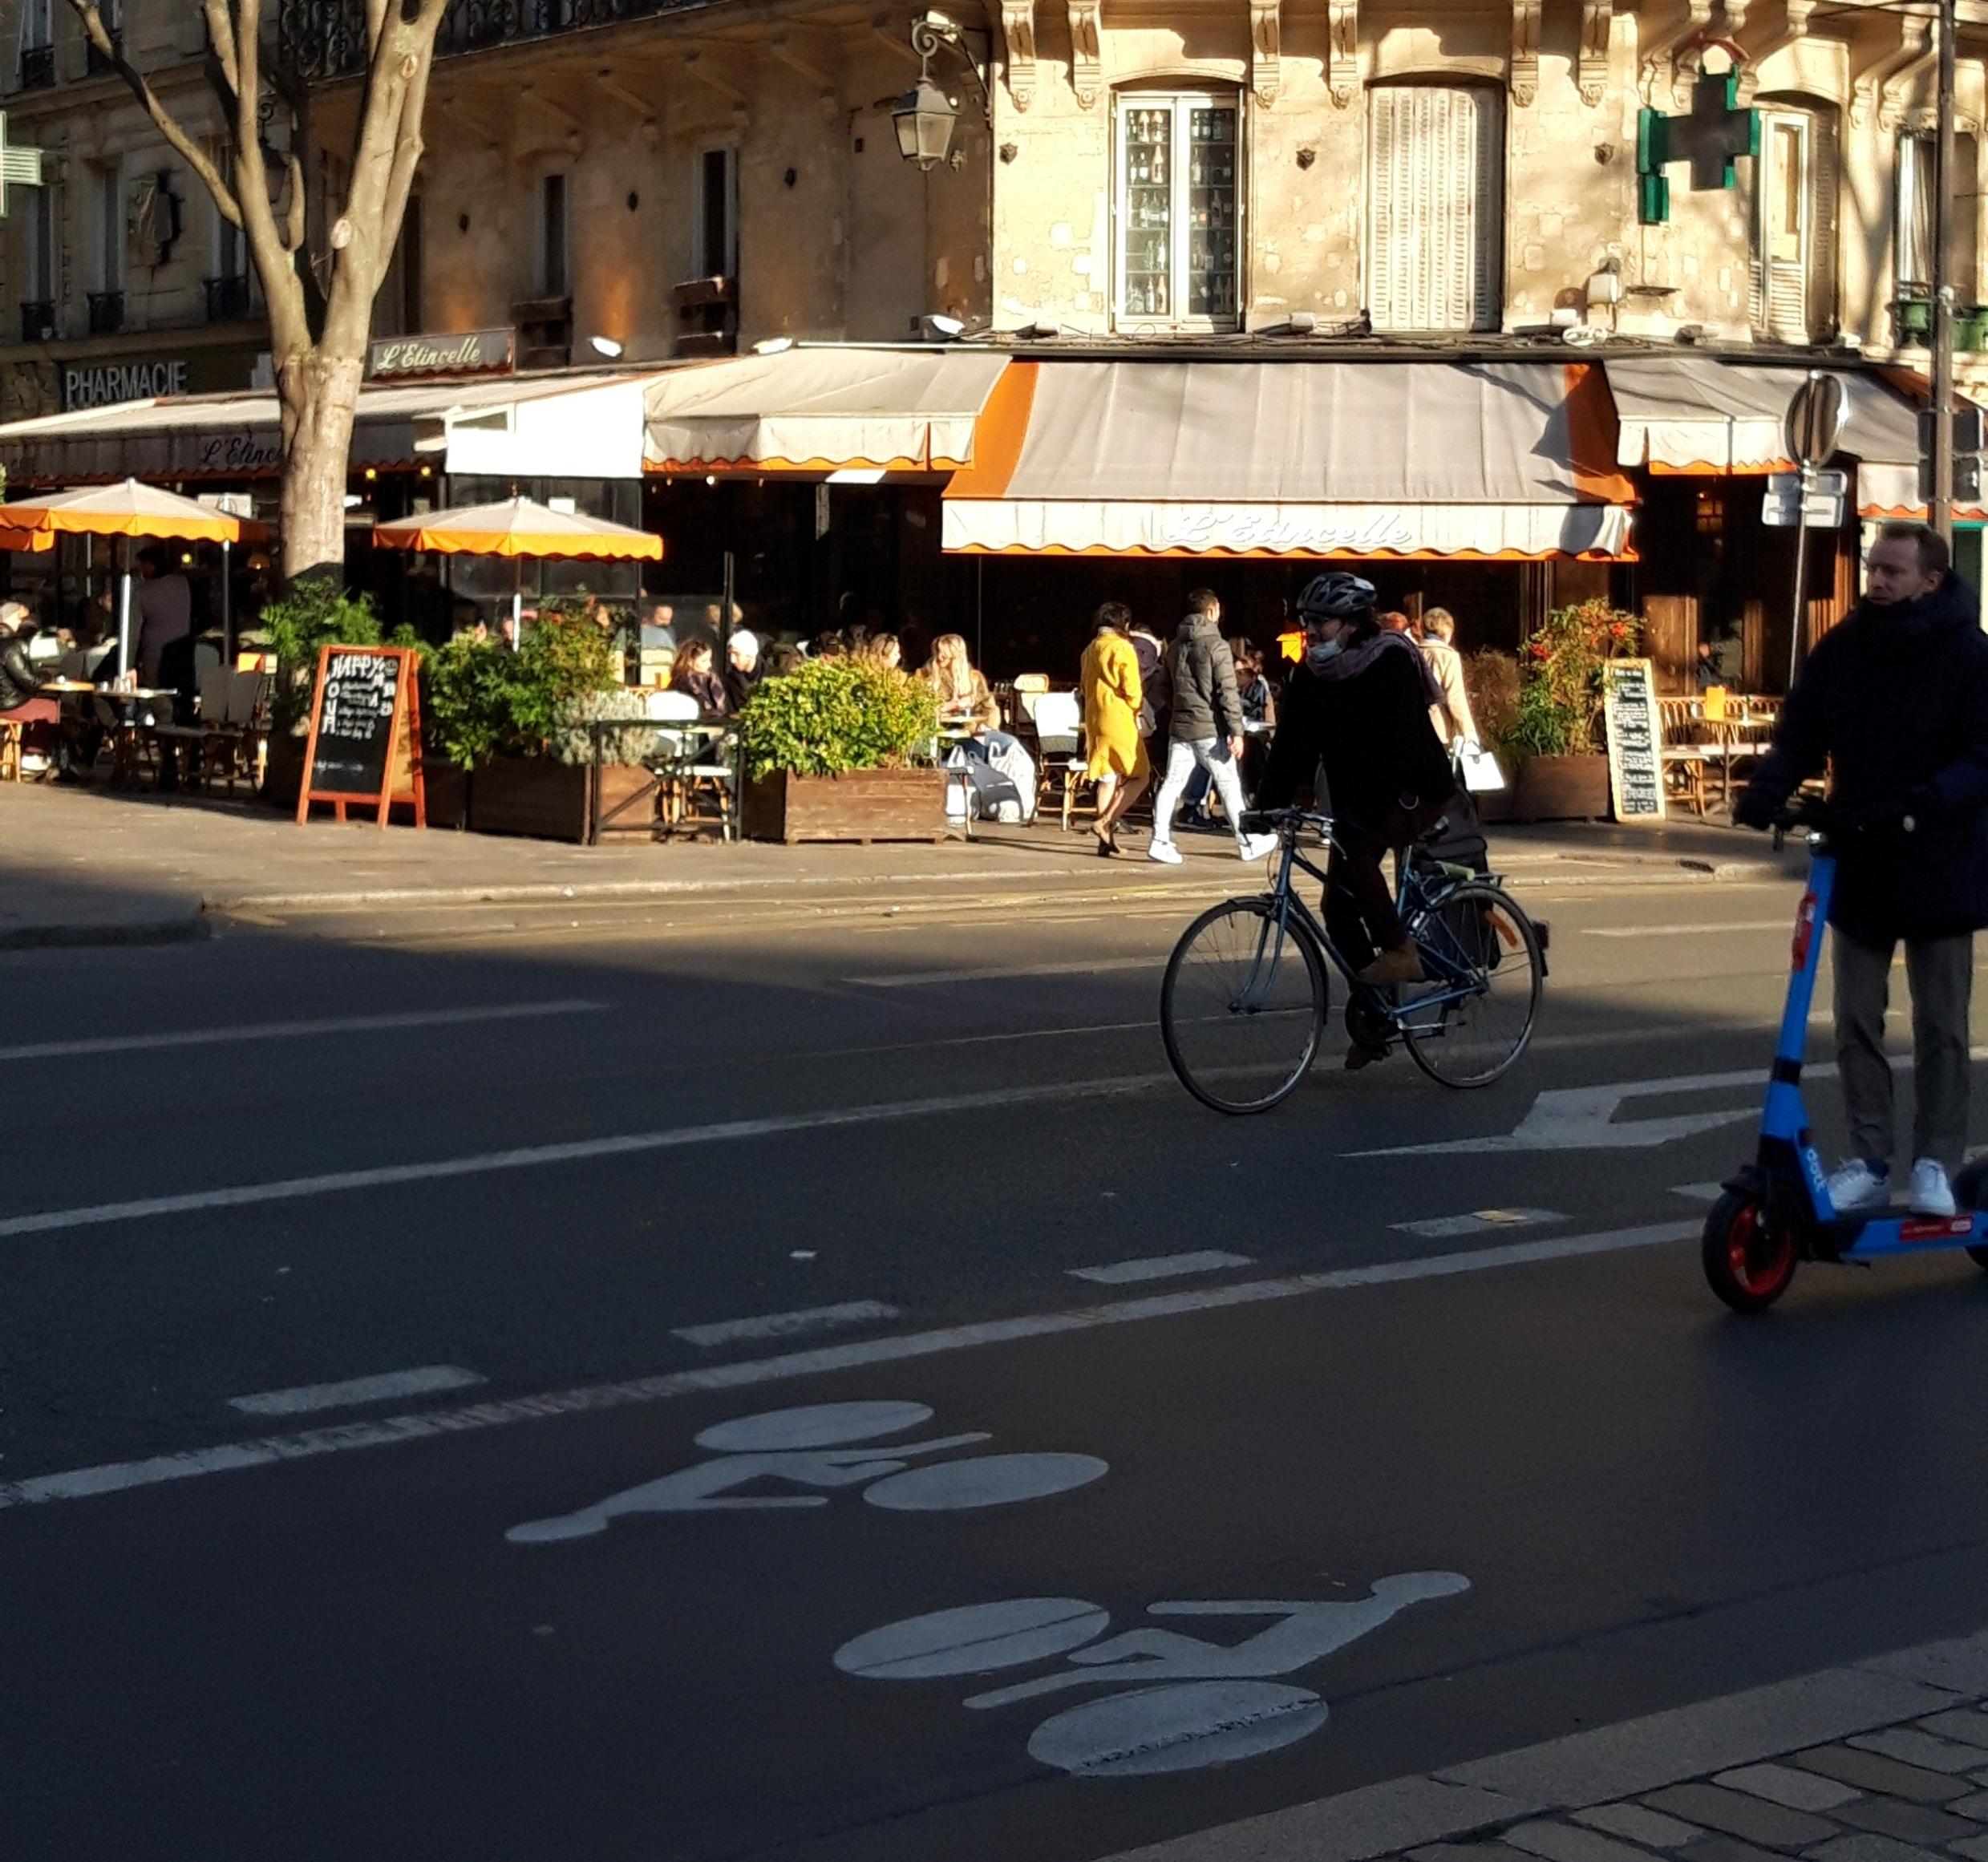 Auf einer breiten Rad-Spur fahren ein Fahrrad und ein E-Roller ins Bild, dessen Hintergrund von einer sonnenbeschienenen Terrasse eines Restaurants bestimmt wird.